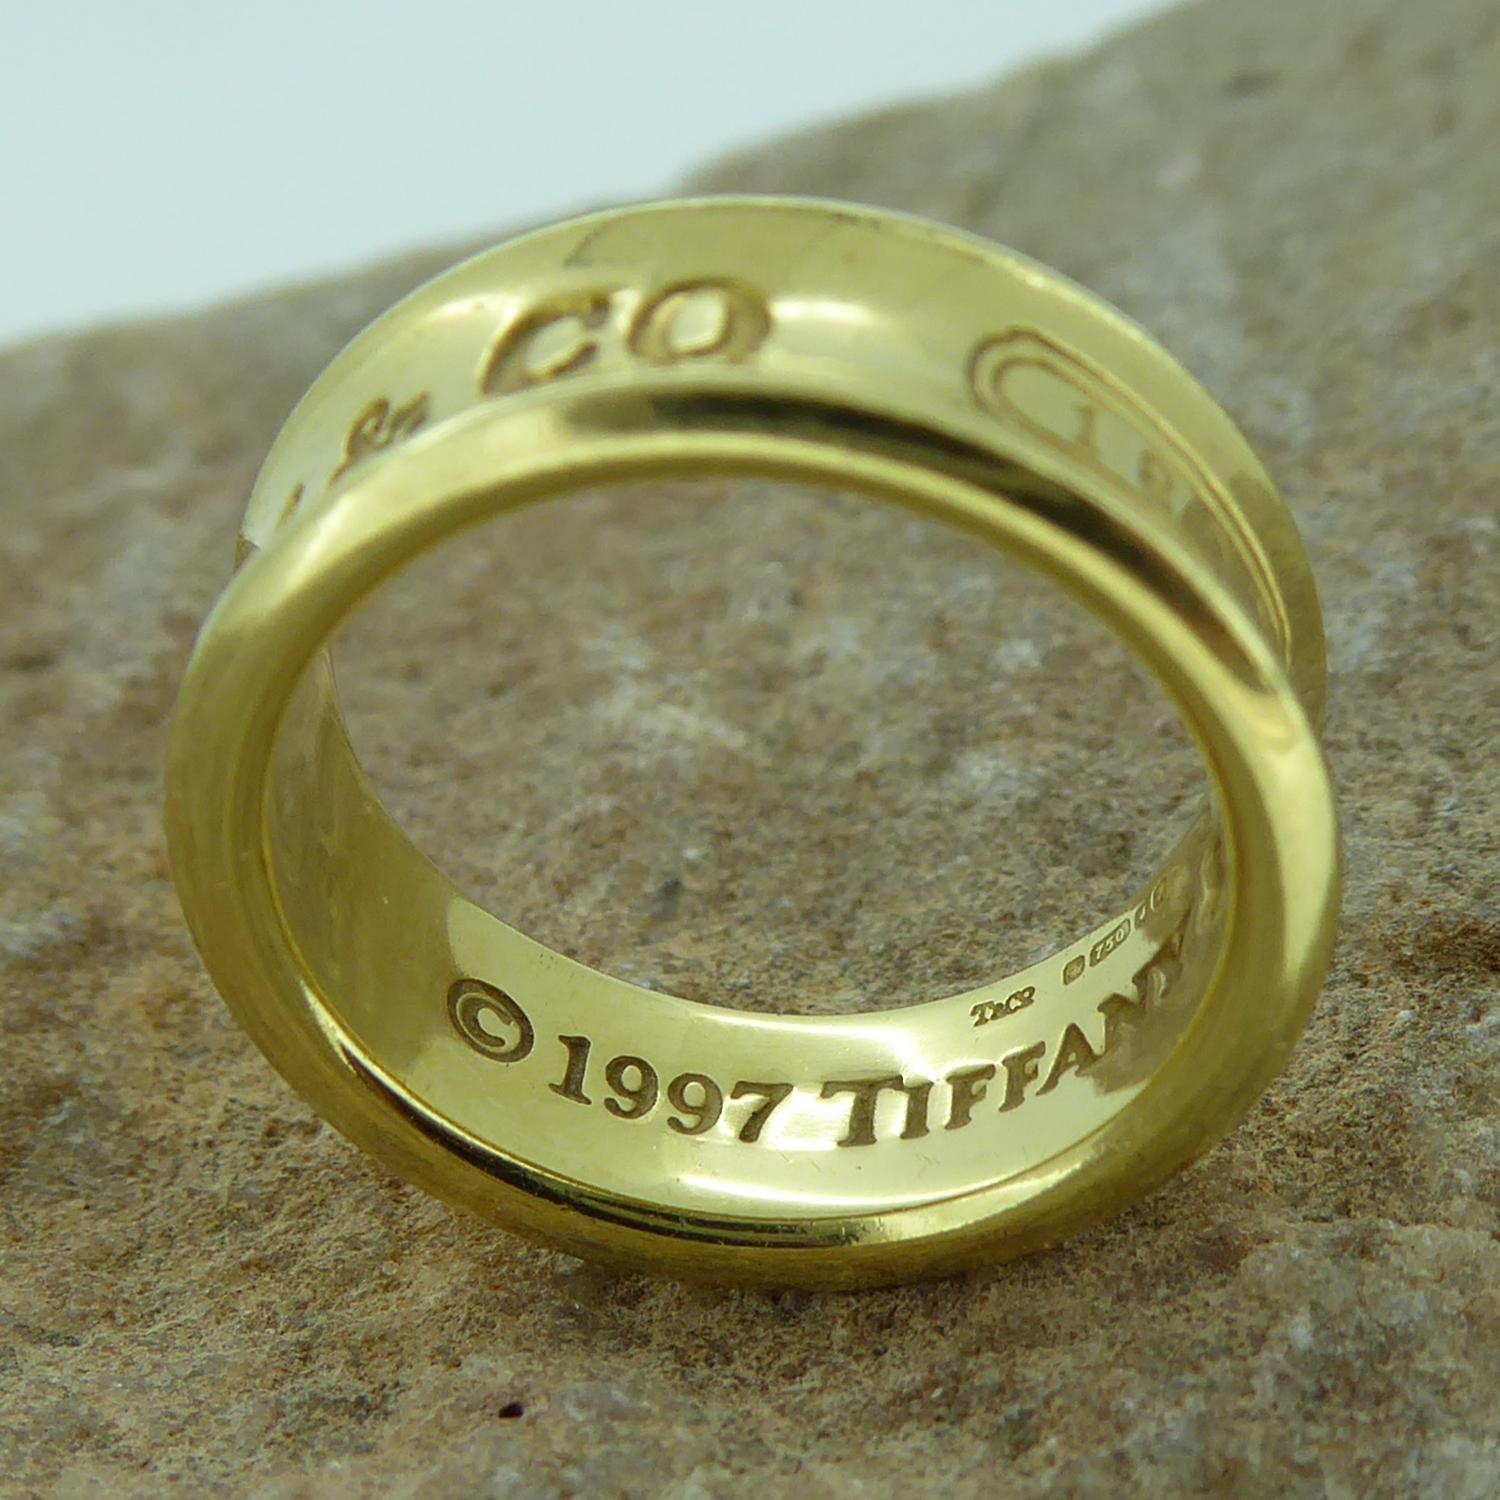 tiffany 1997 ring